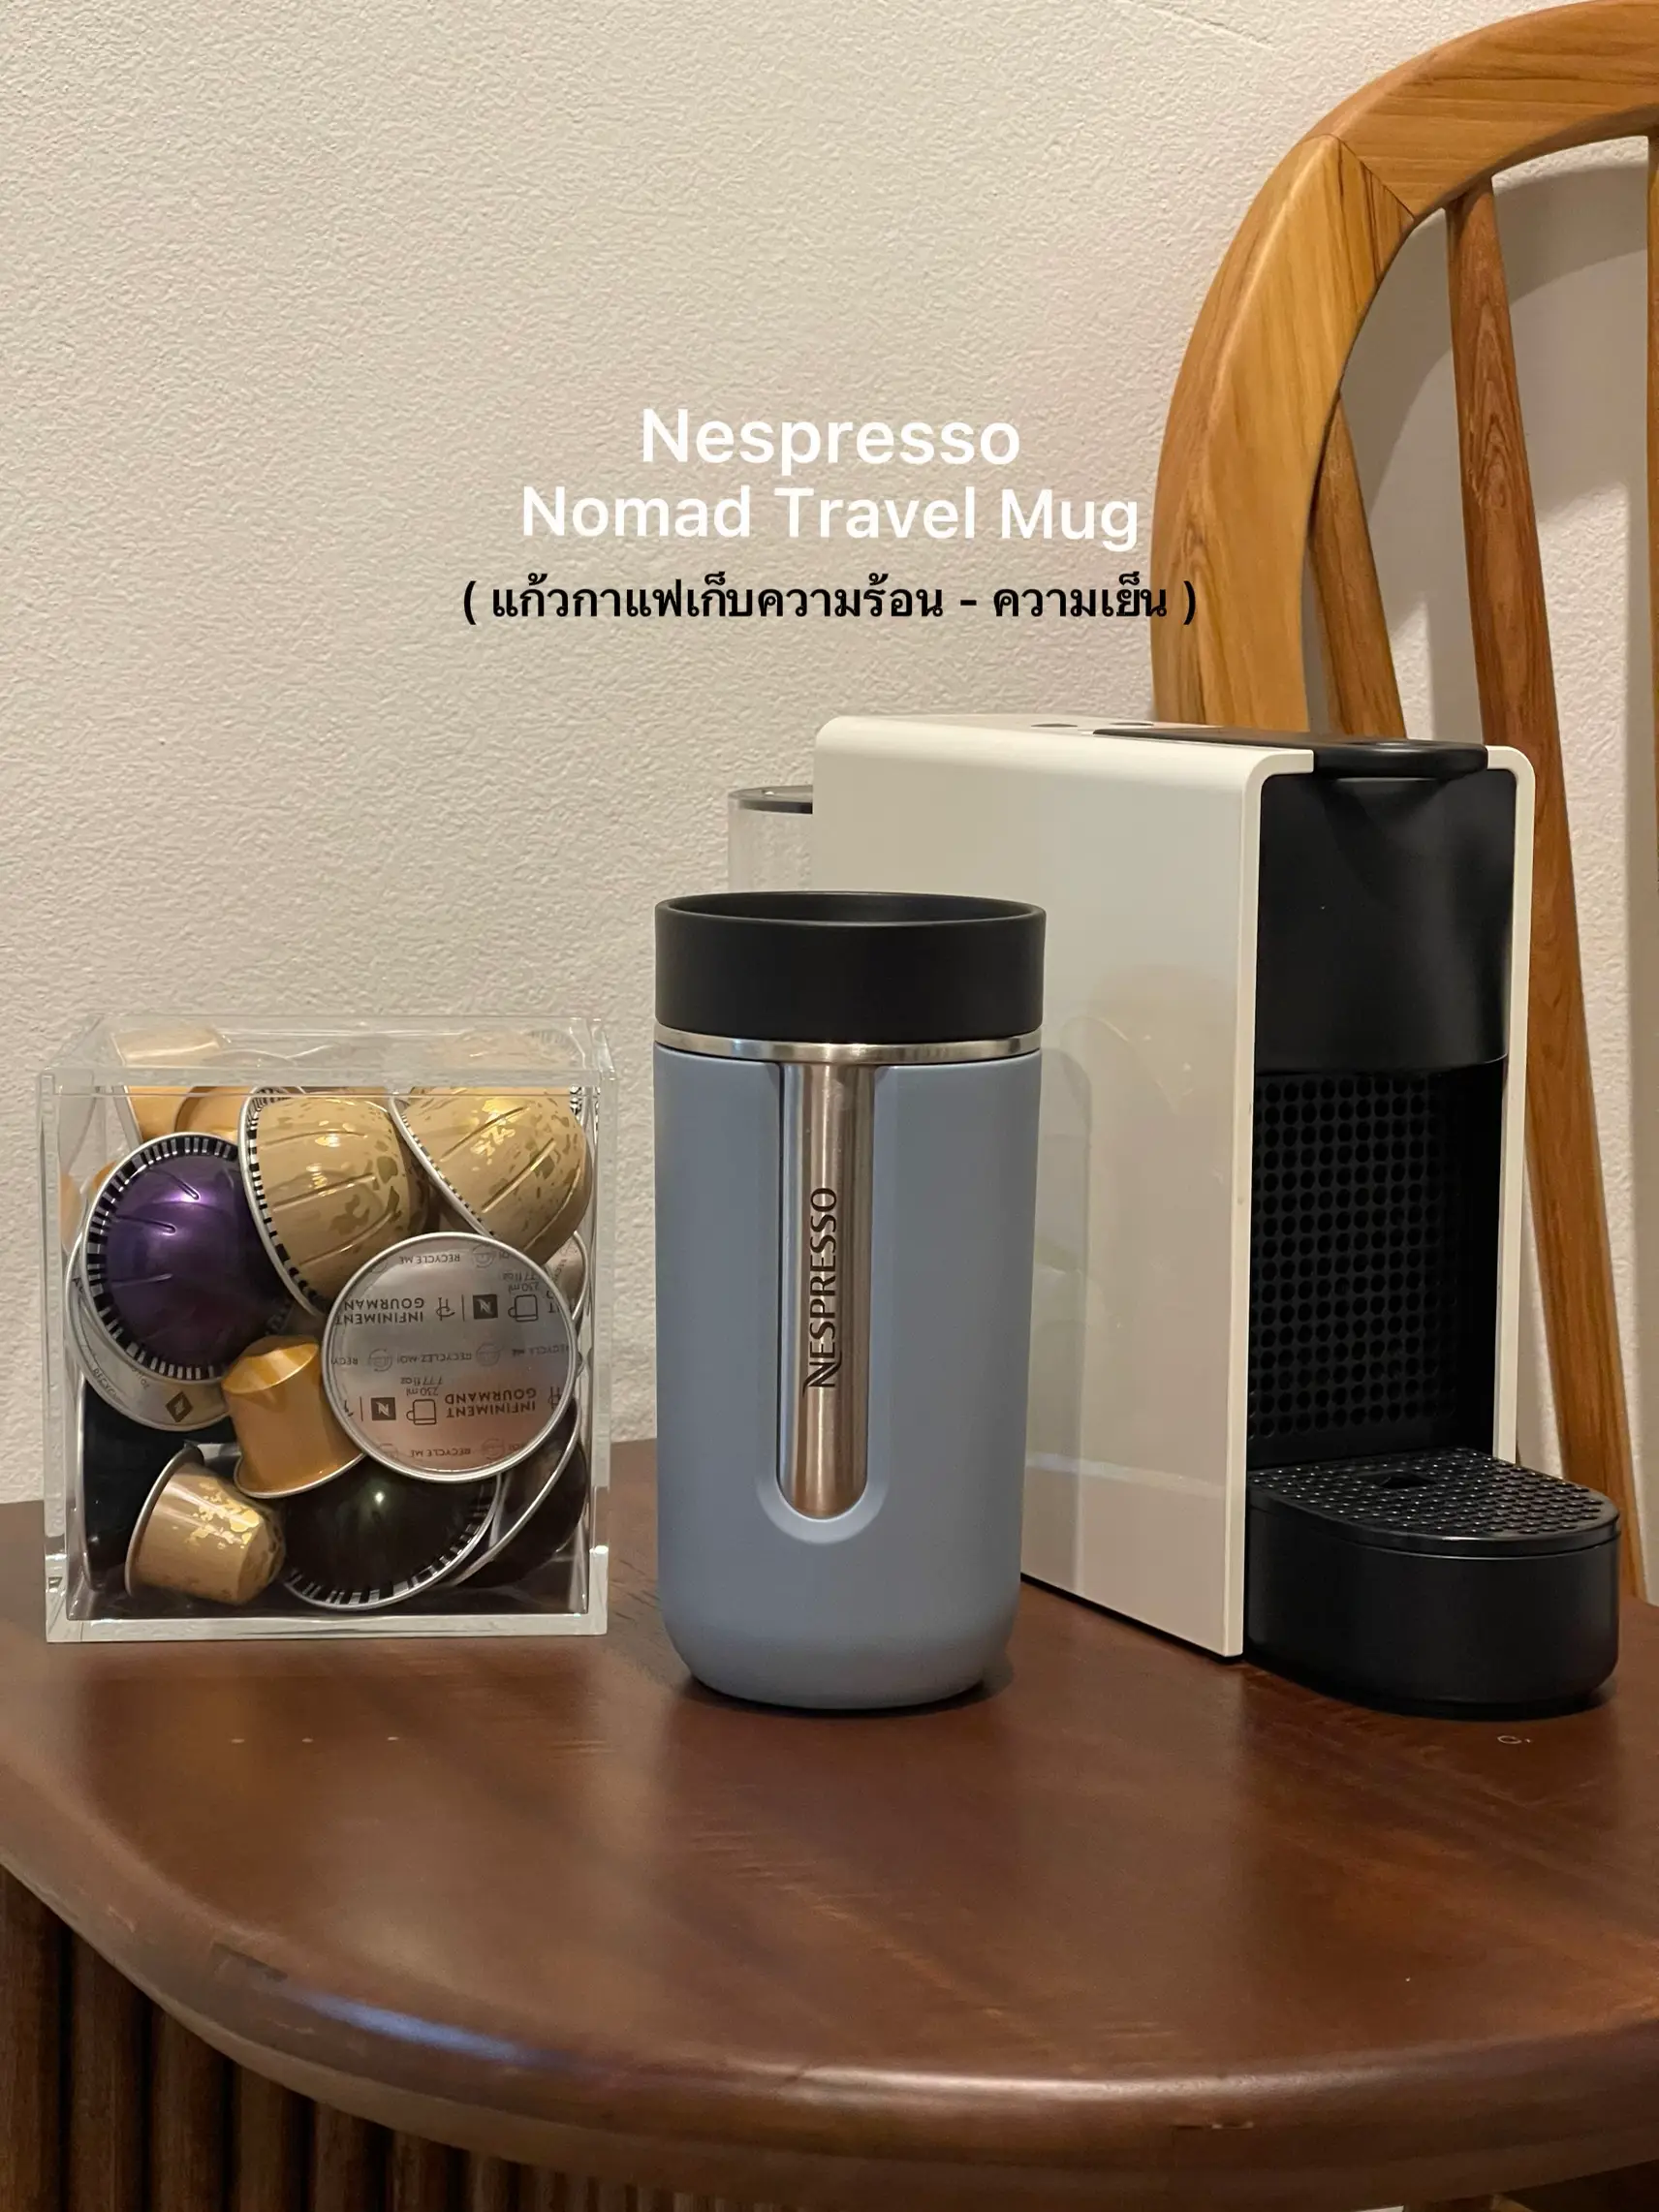  Nespresso Mug